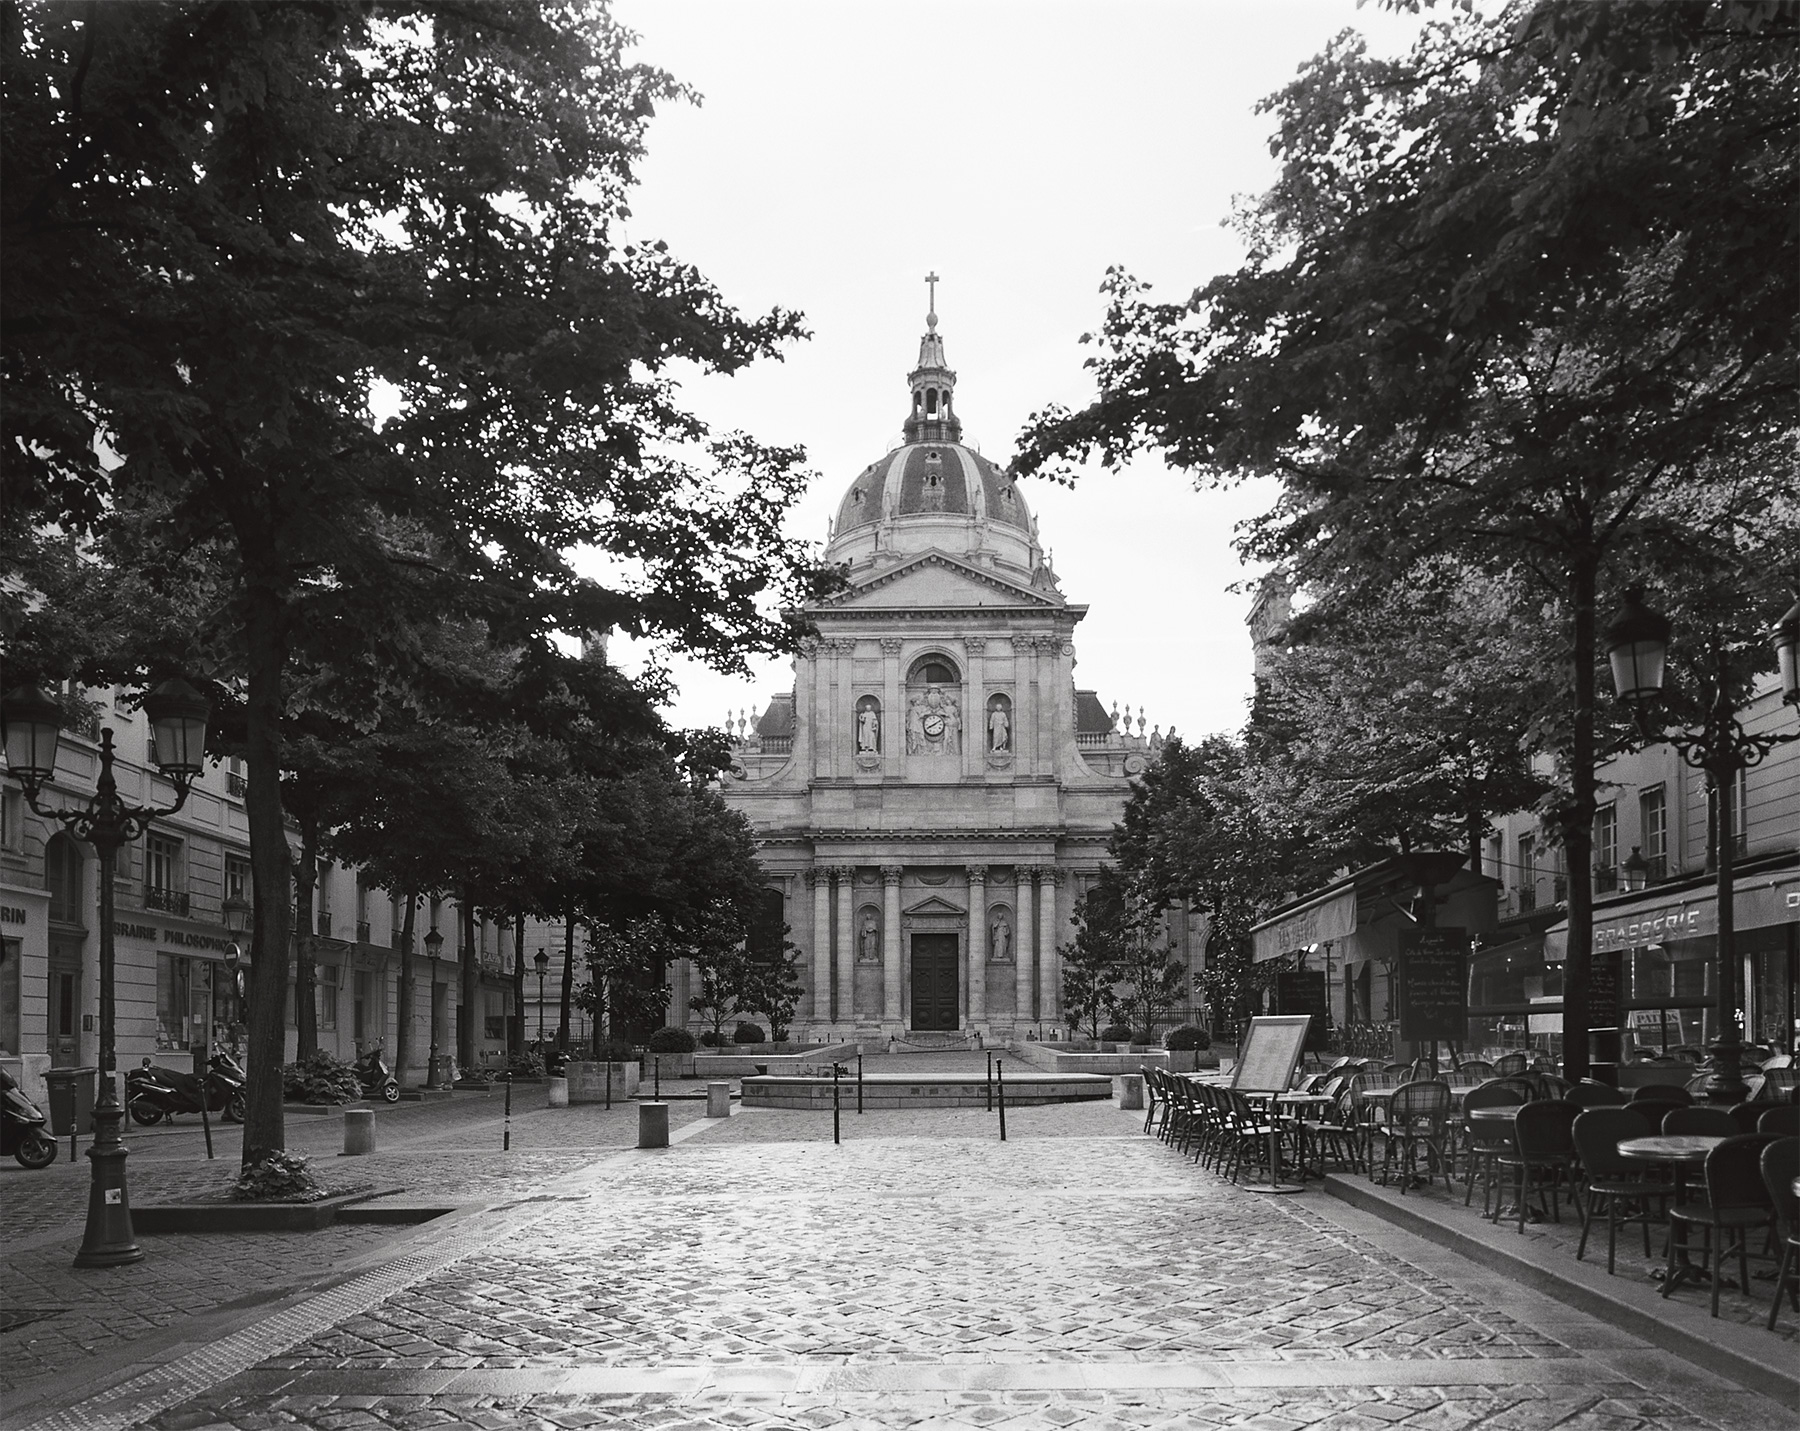 Églises de Paris, archéologie du divin dans le paysage urbain